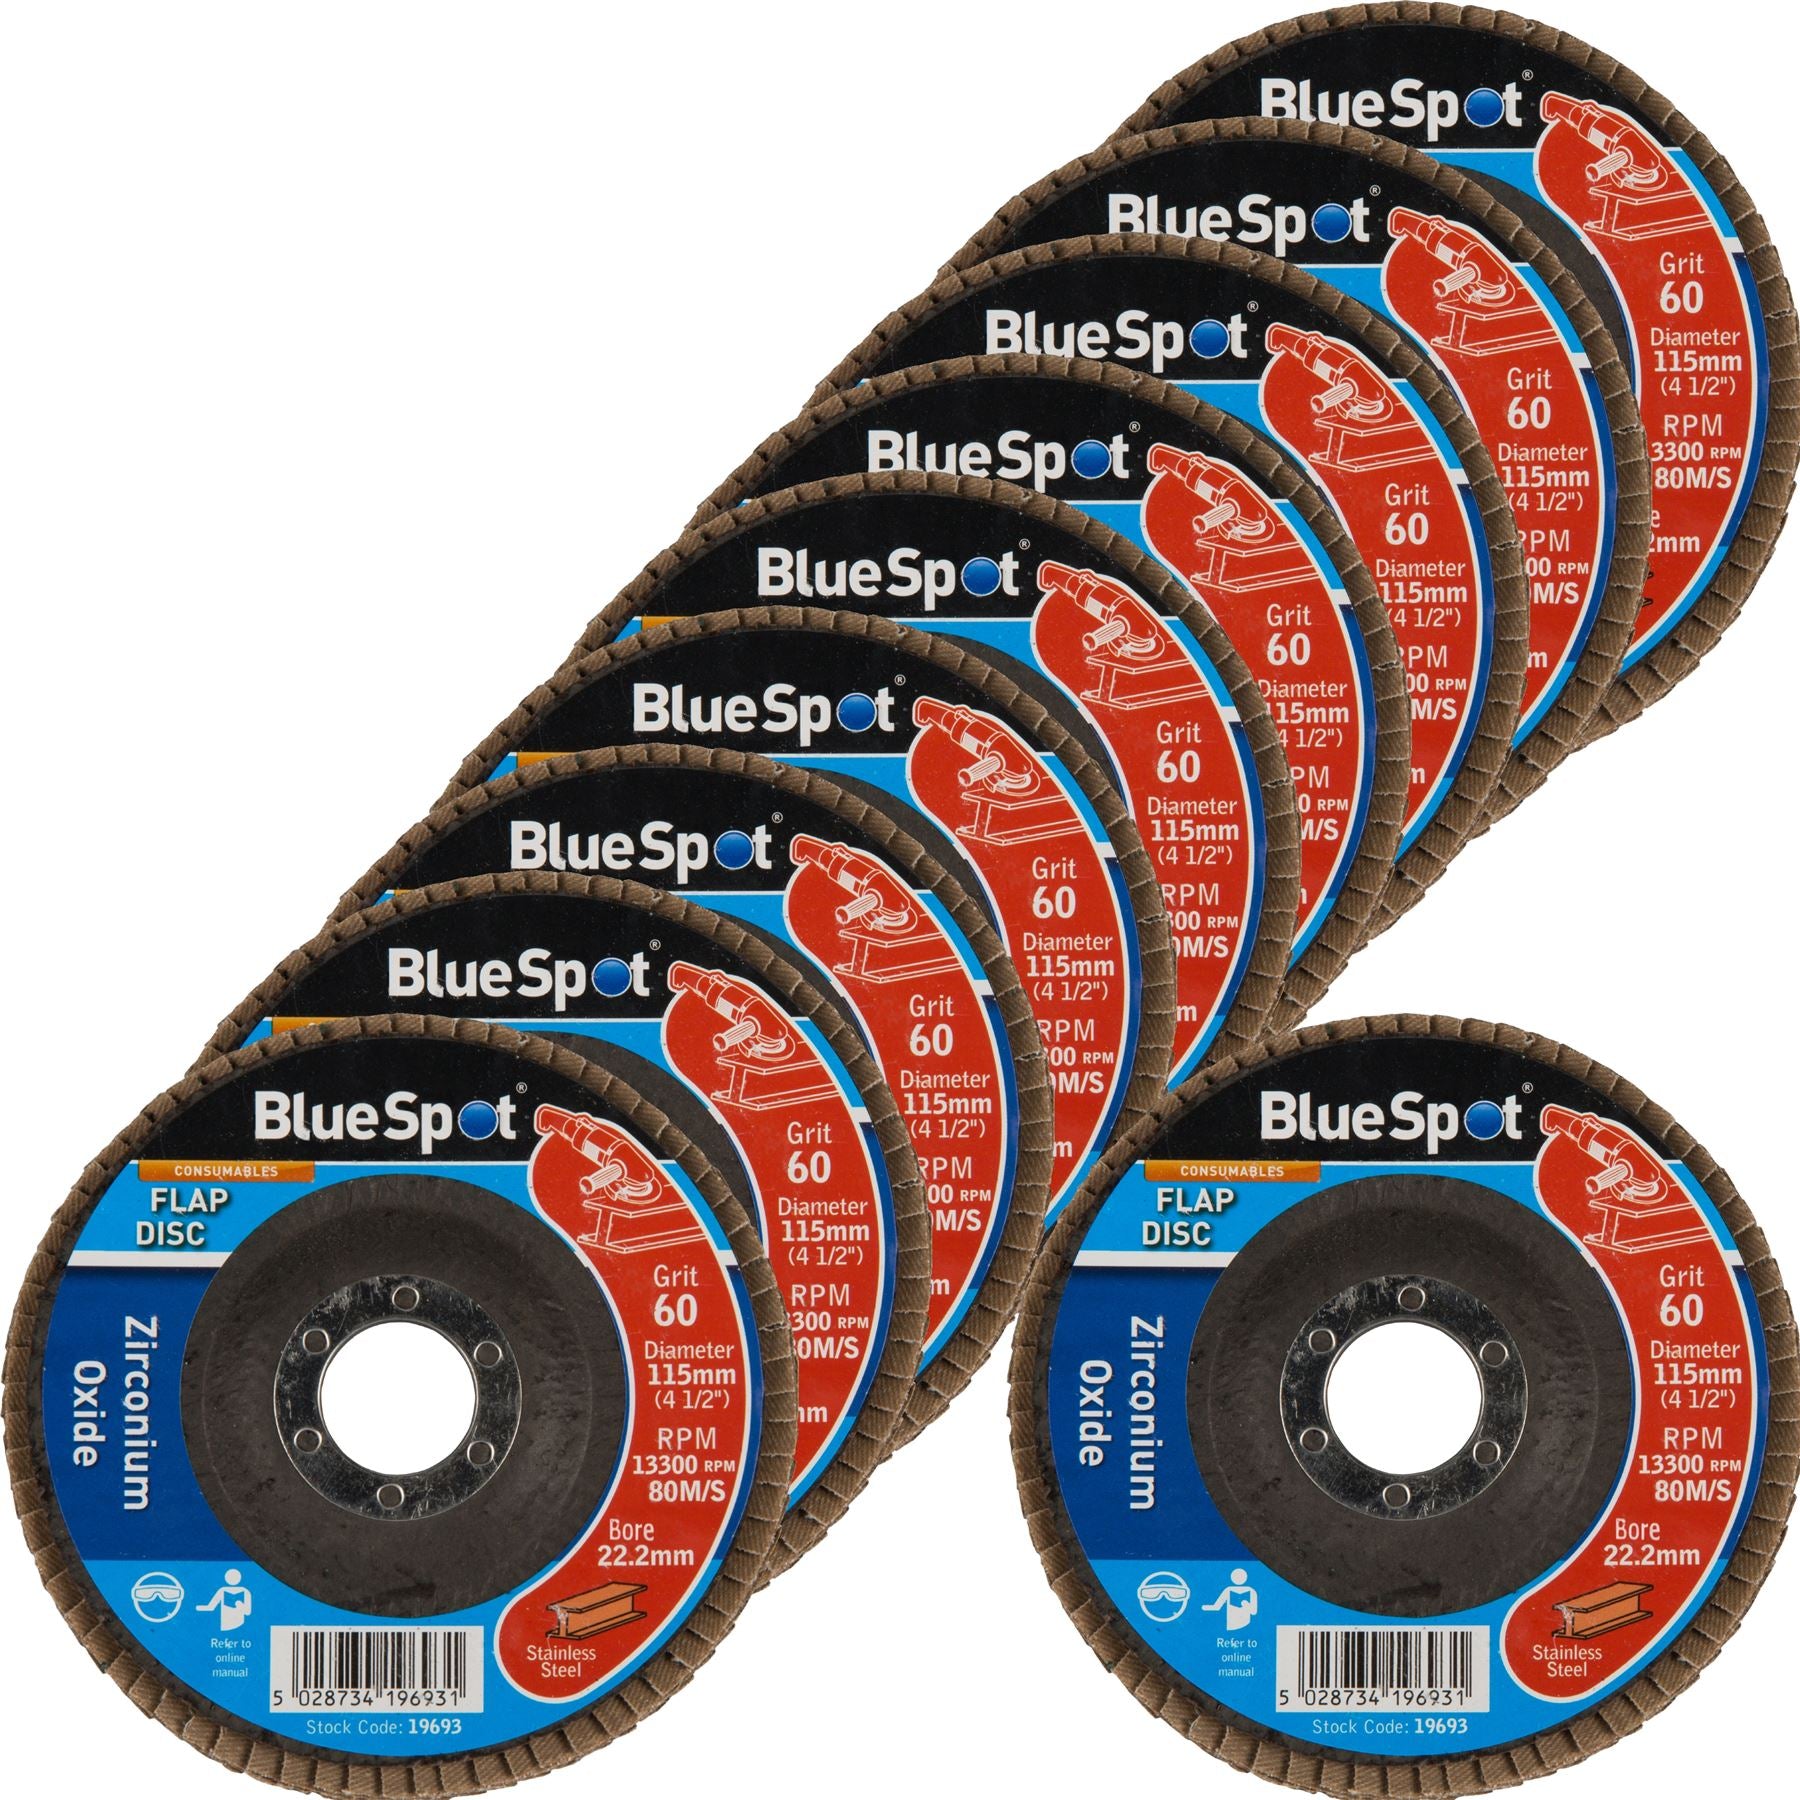 BlueSpot 10pc Sanding Zirconium Flap Disc Set Angle Grinder 40 60 80 120 Grit